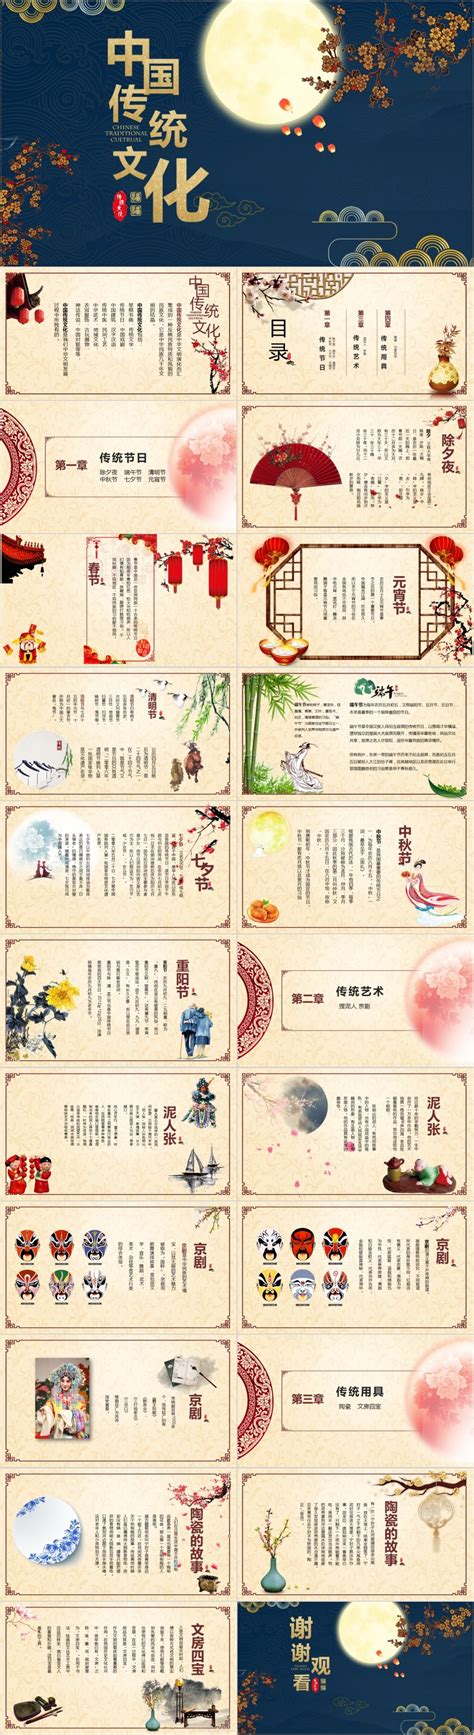 中国传统节日的文化内涵：从春节到中秋，感受中华文化的独特魅力 - 命理知识